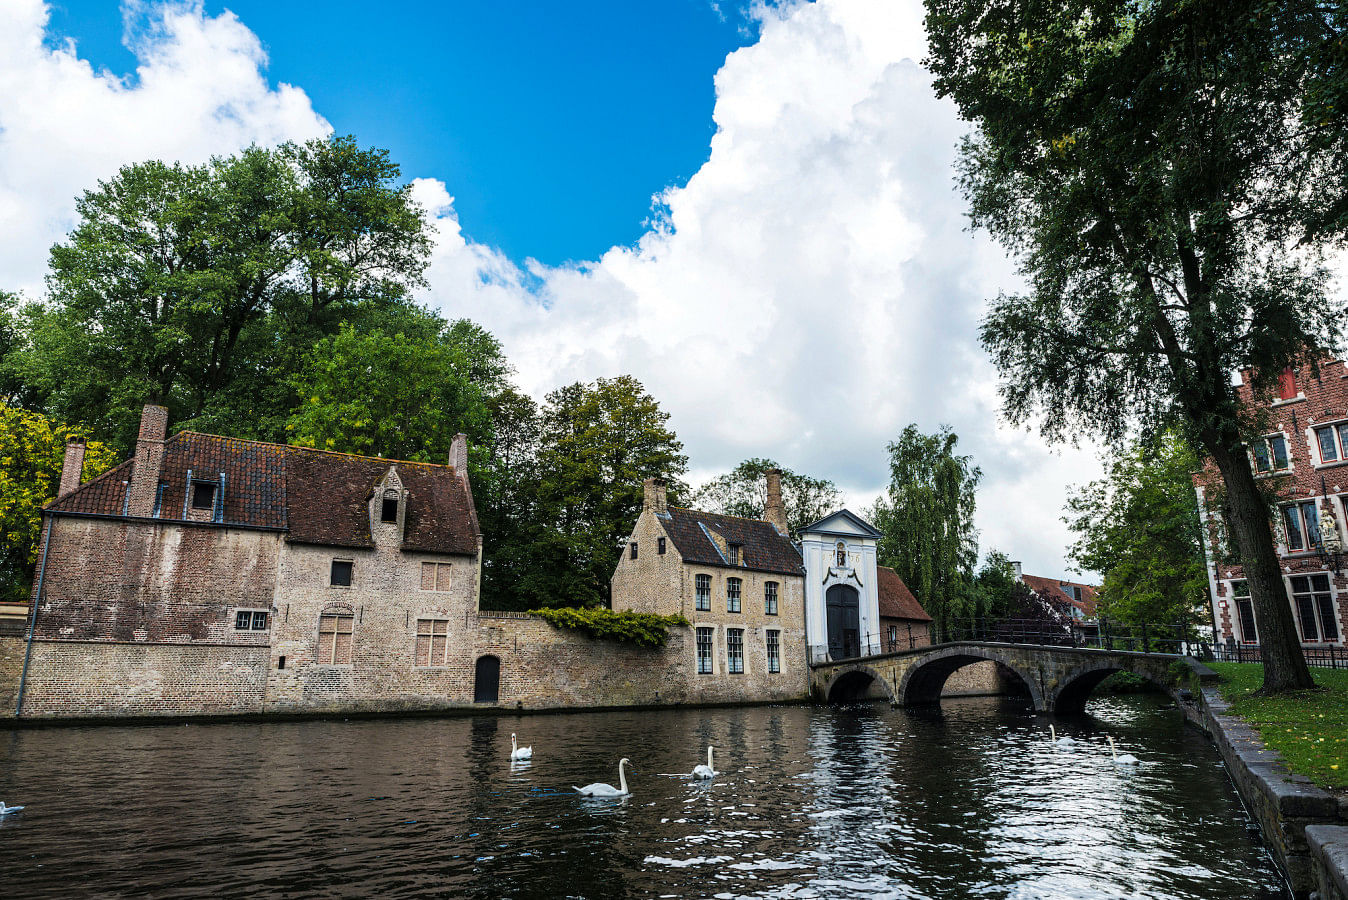 Lej en båd i Bruges